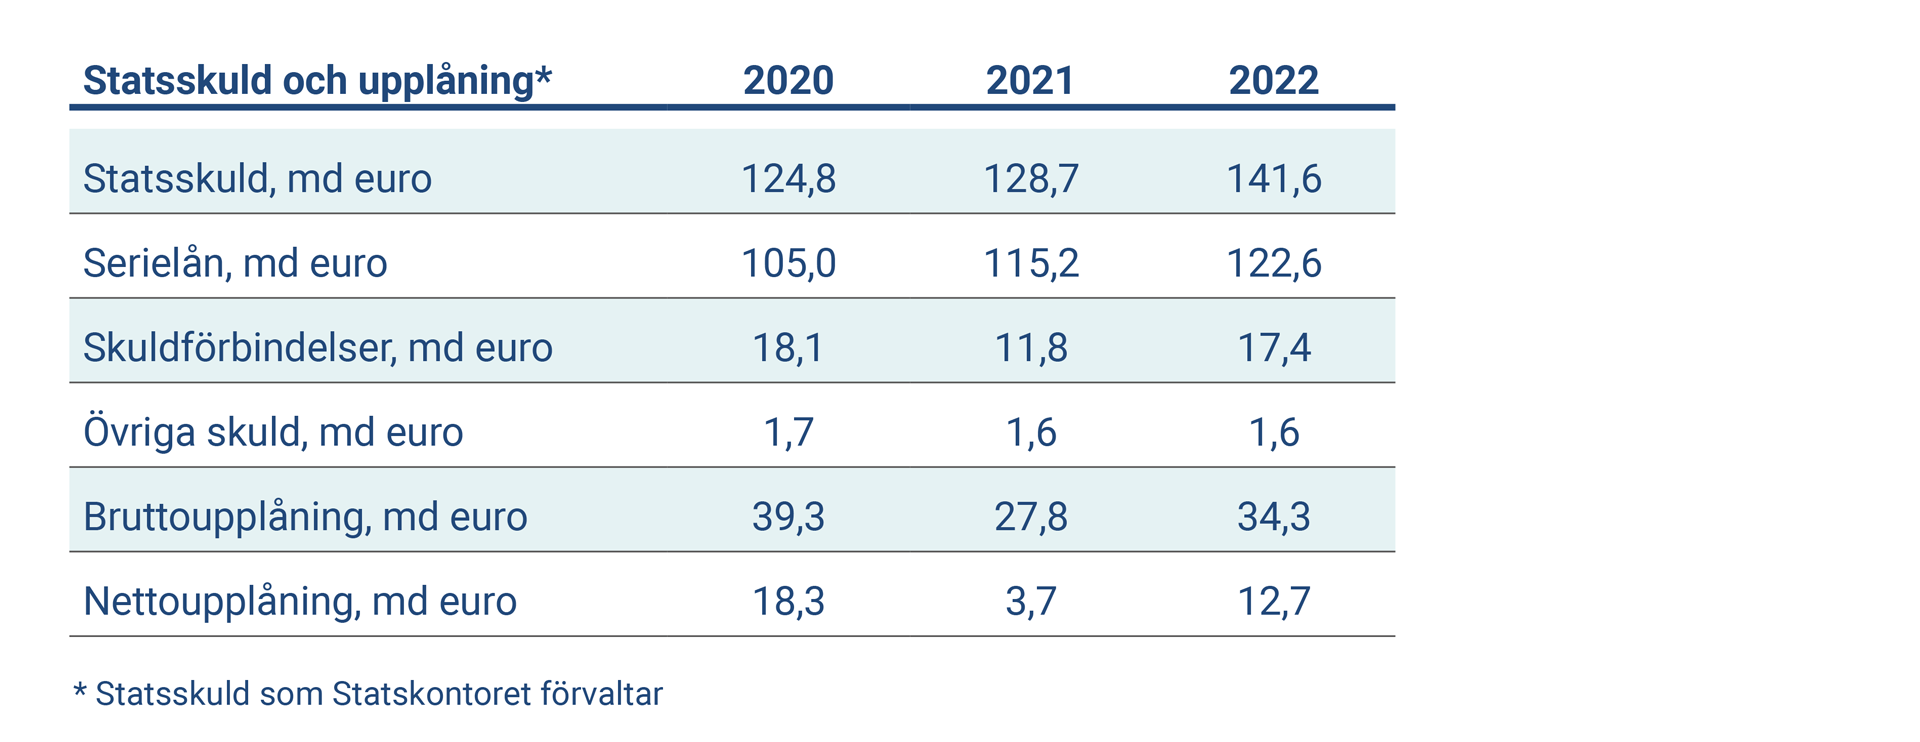 Tabellen visar nyckeltal om statsskuld och statens upplåning 2020-2022. 